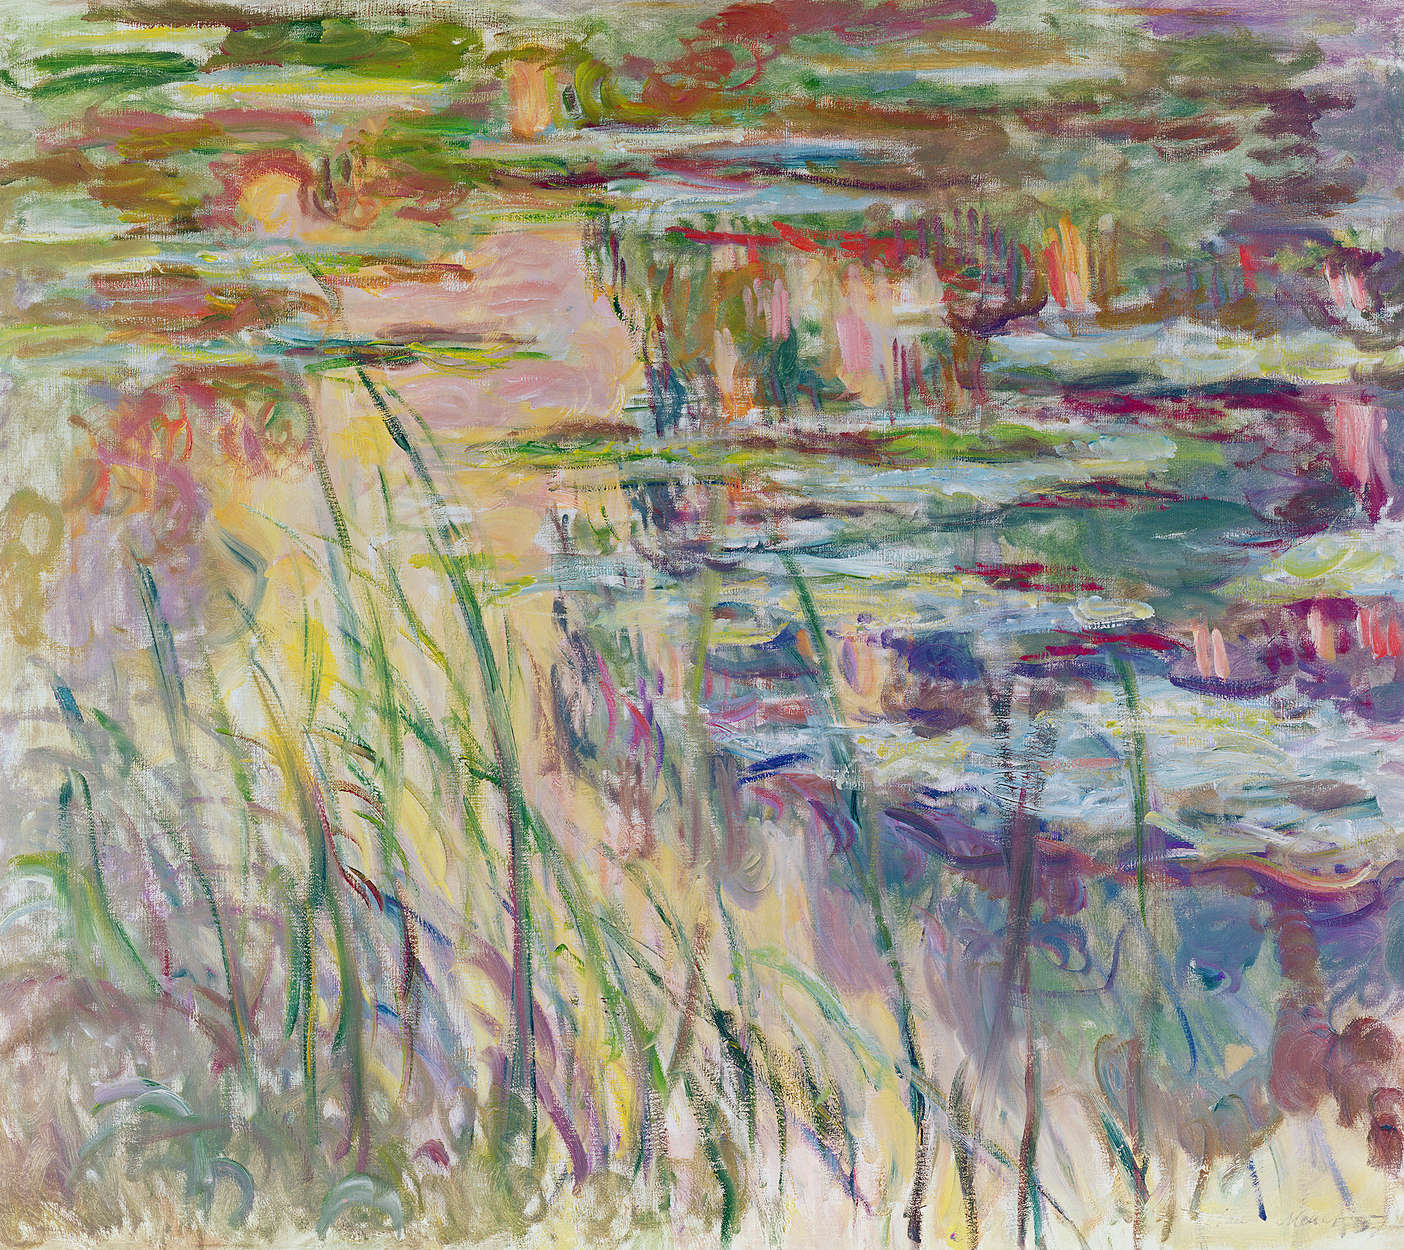             Papier peint panoramique "Reflets sur l'eau" de Claude Monet
        